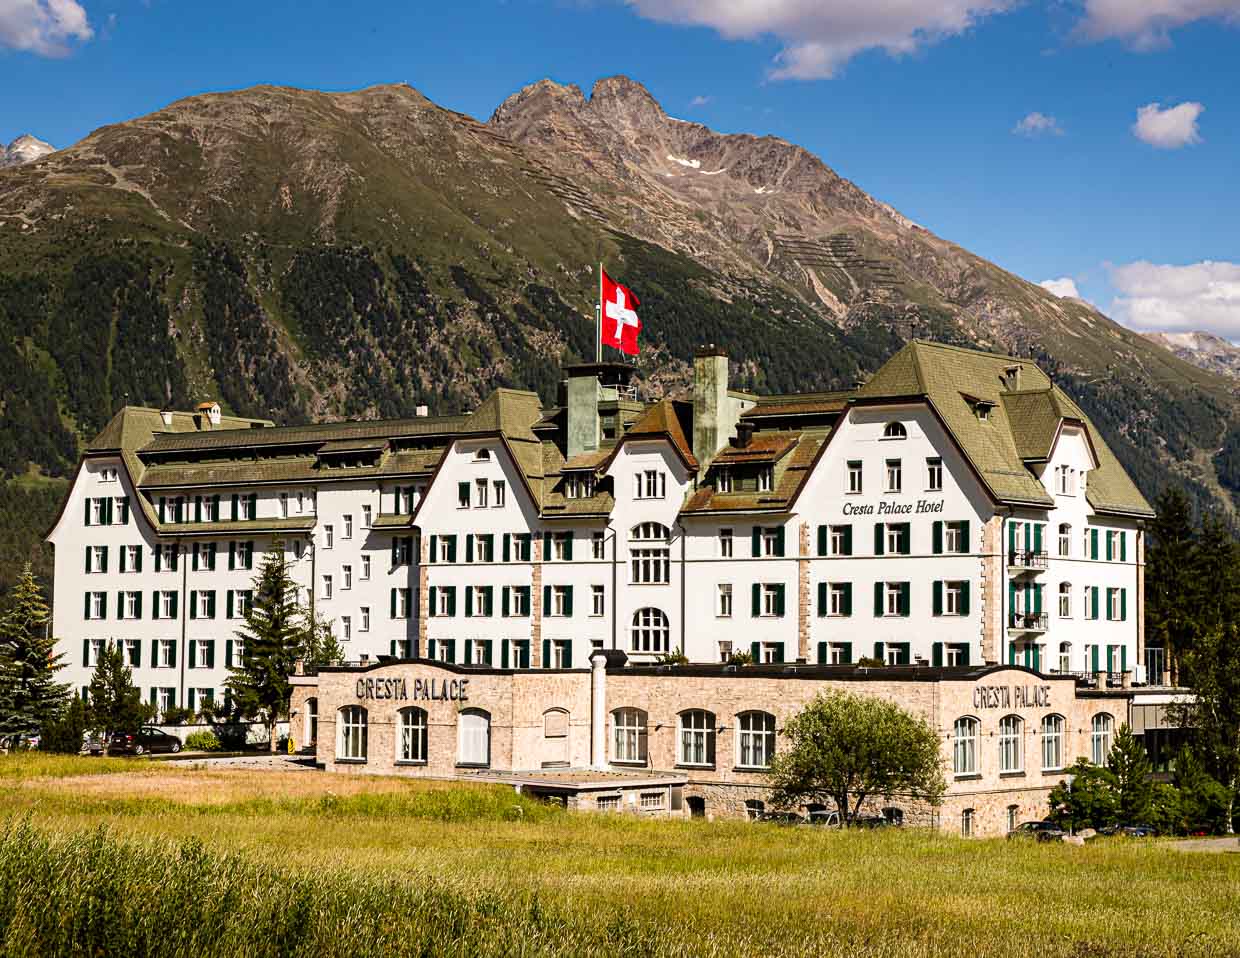 Le Cresta Palace est un hôtel de luxe situé à Celerina, dans les Grisons, en Suisse / © Photo : Georg Berg